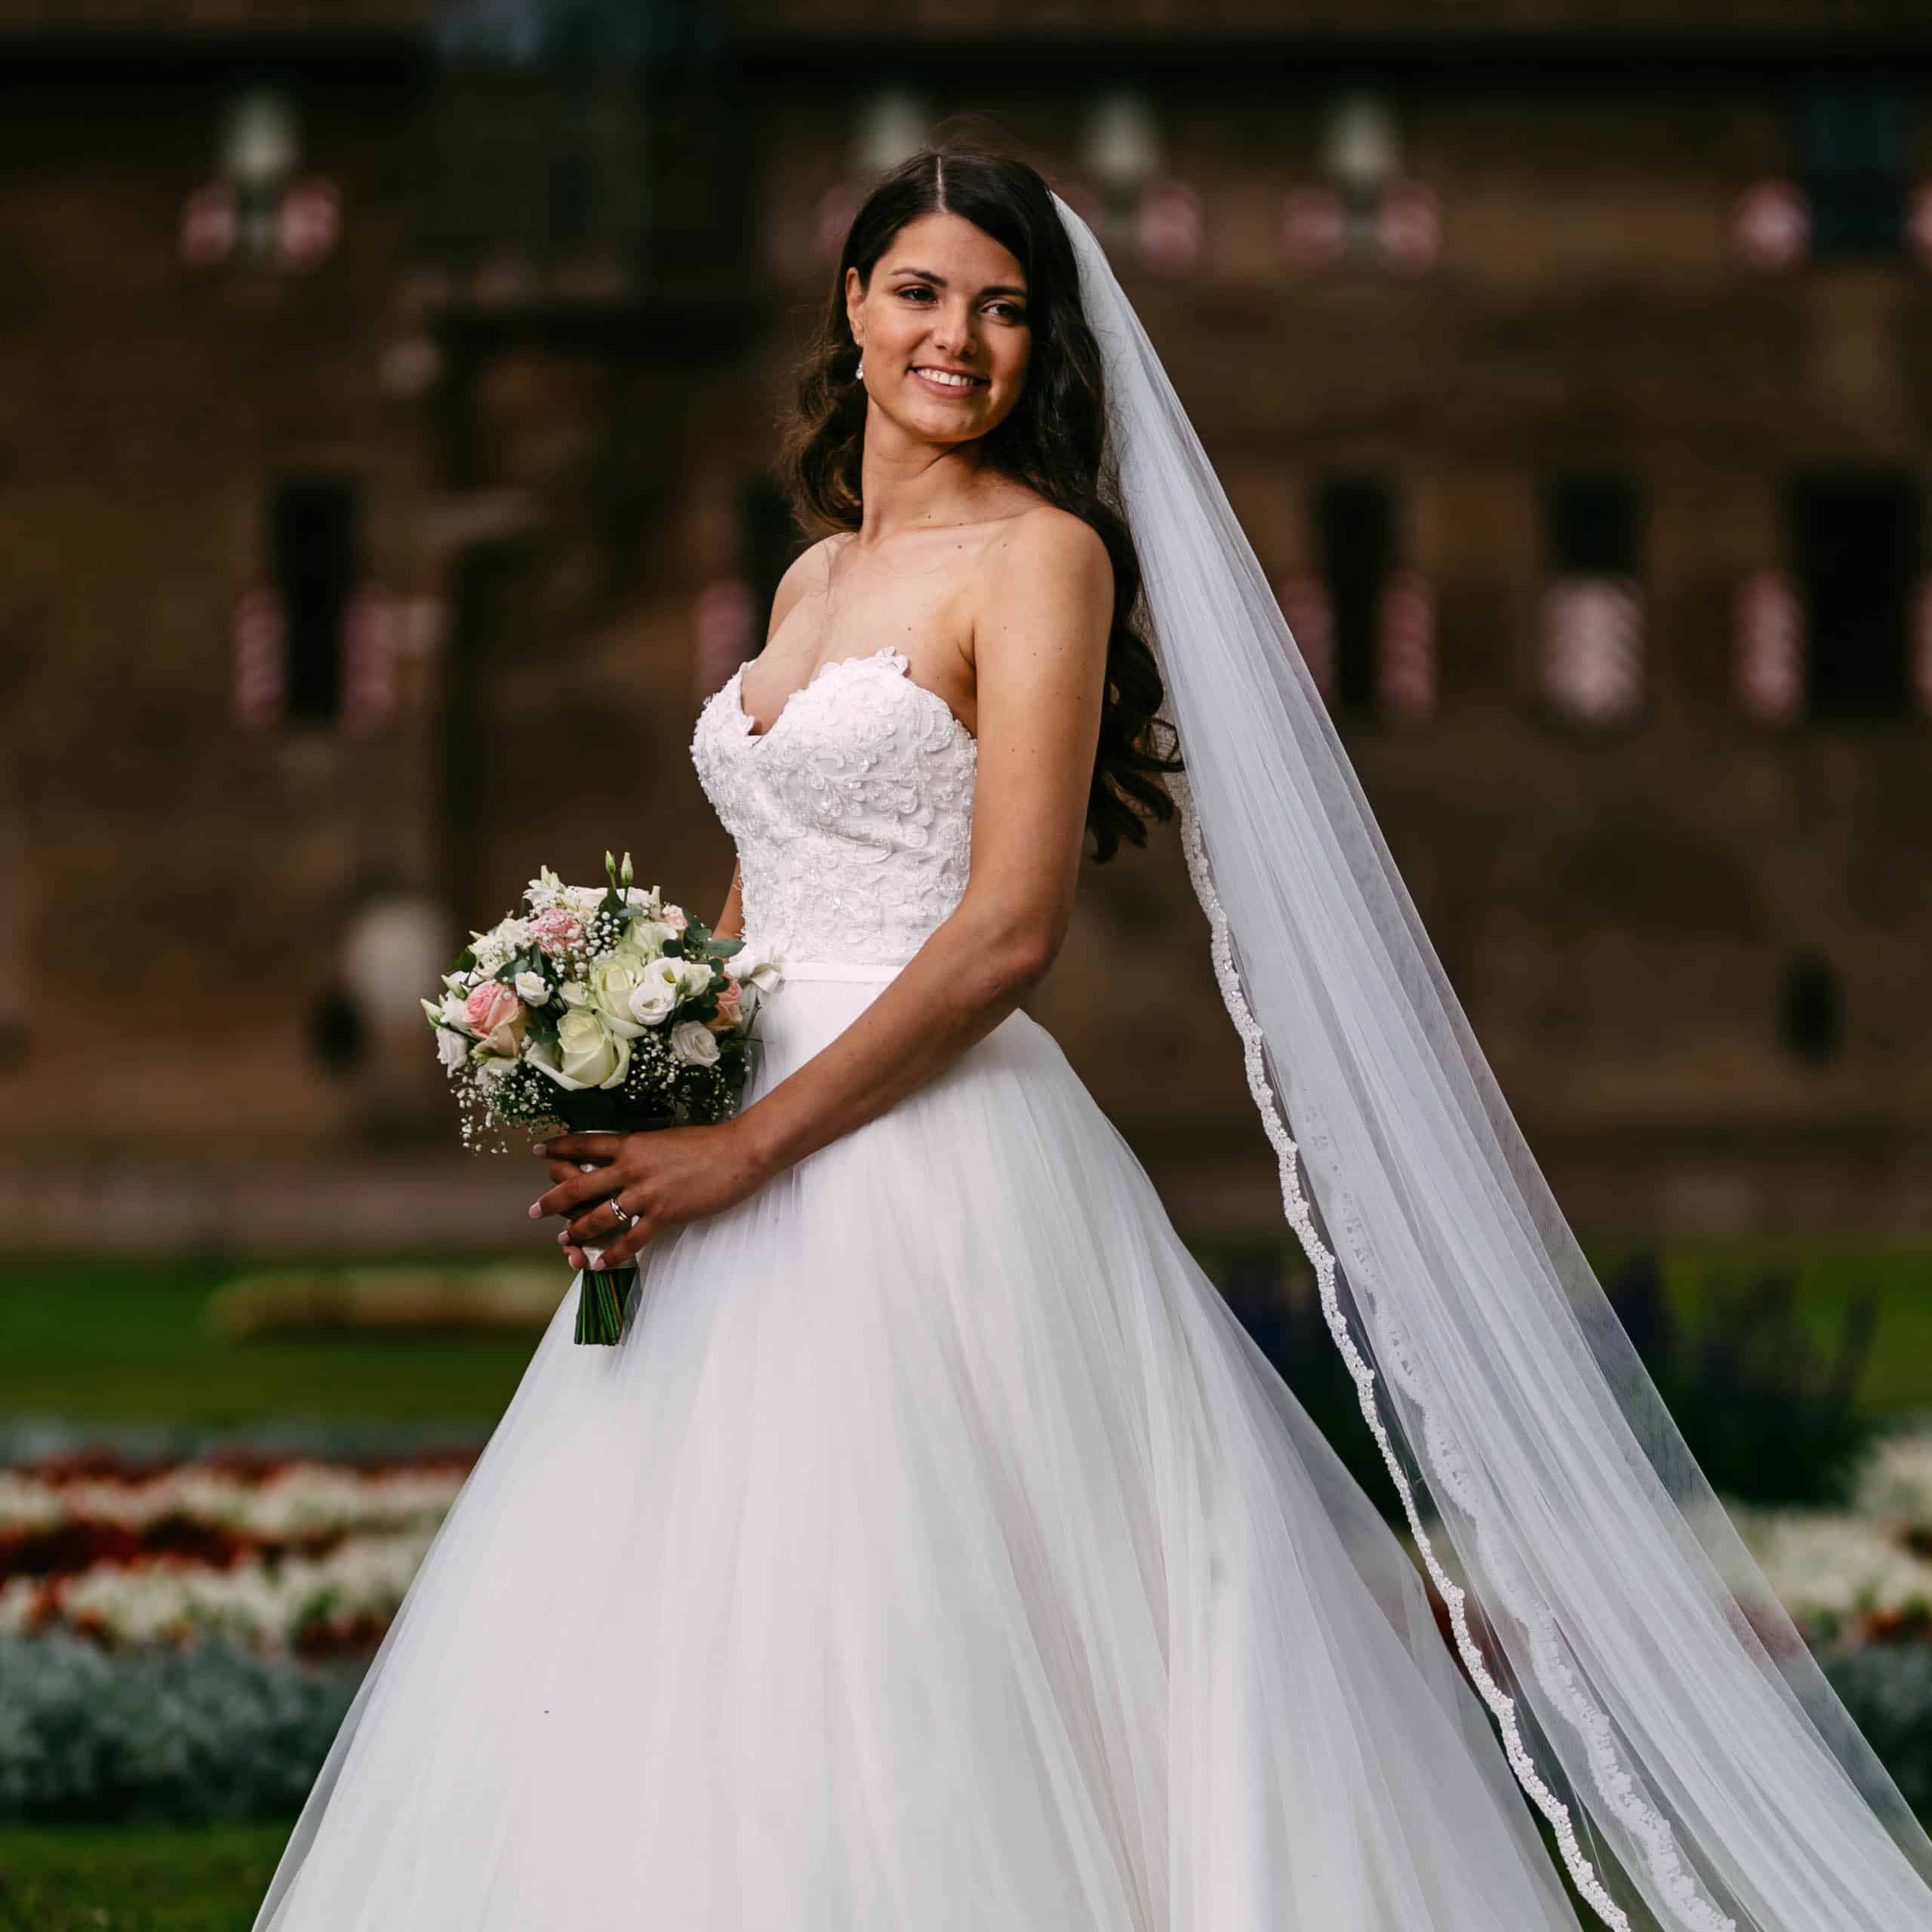 A bride in wedding dress stands in front of Castle de Haar.